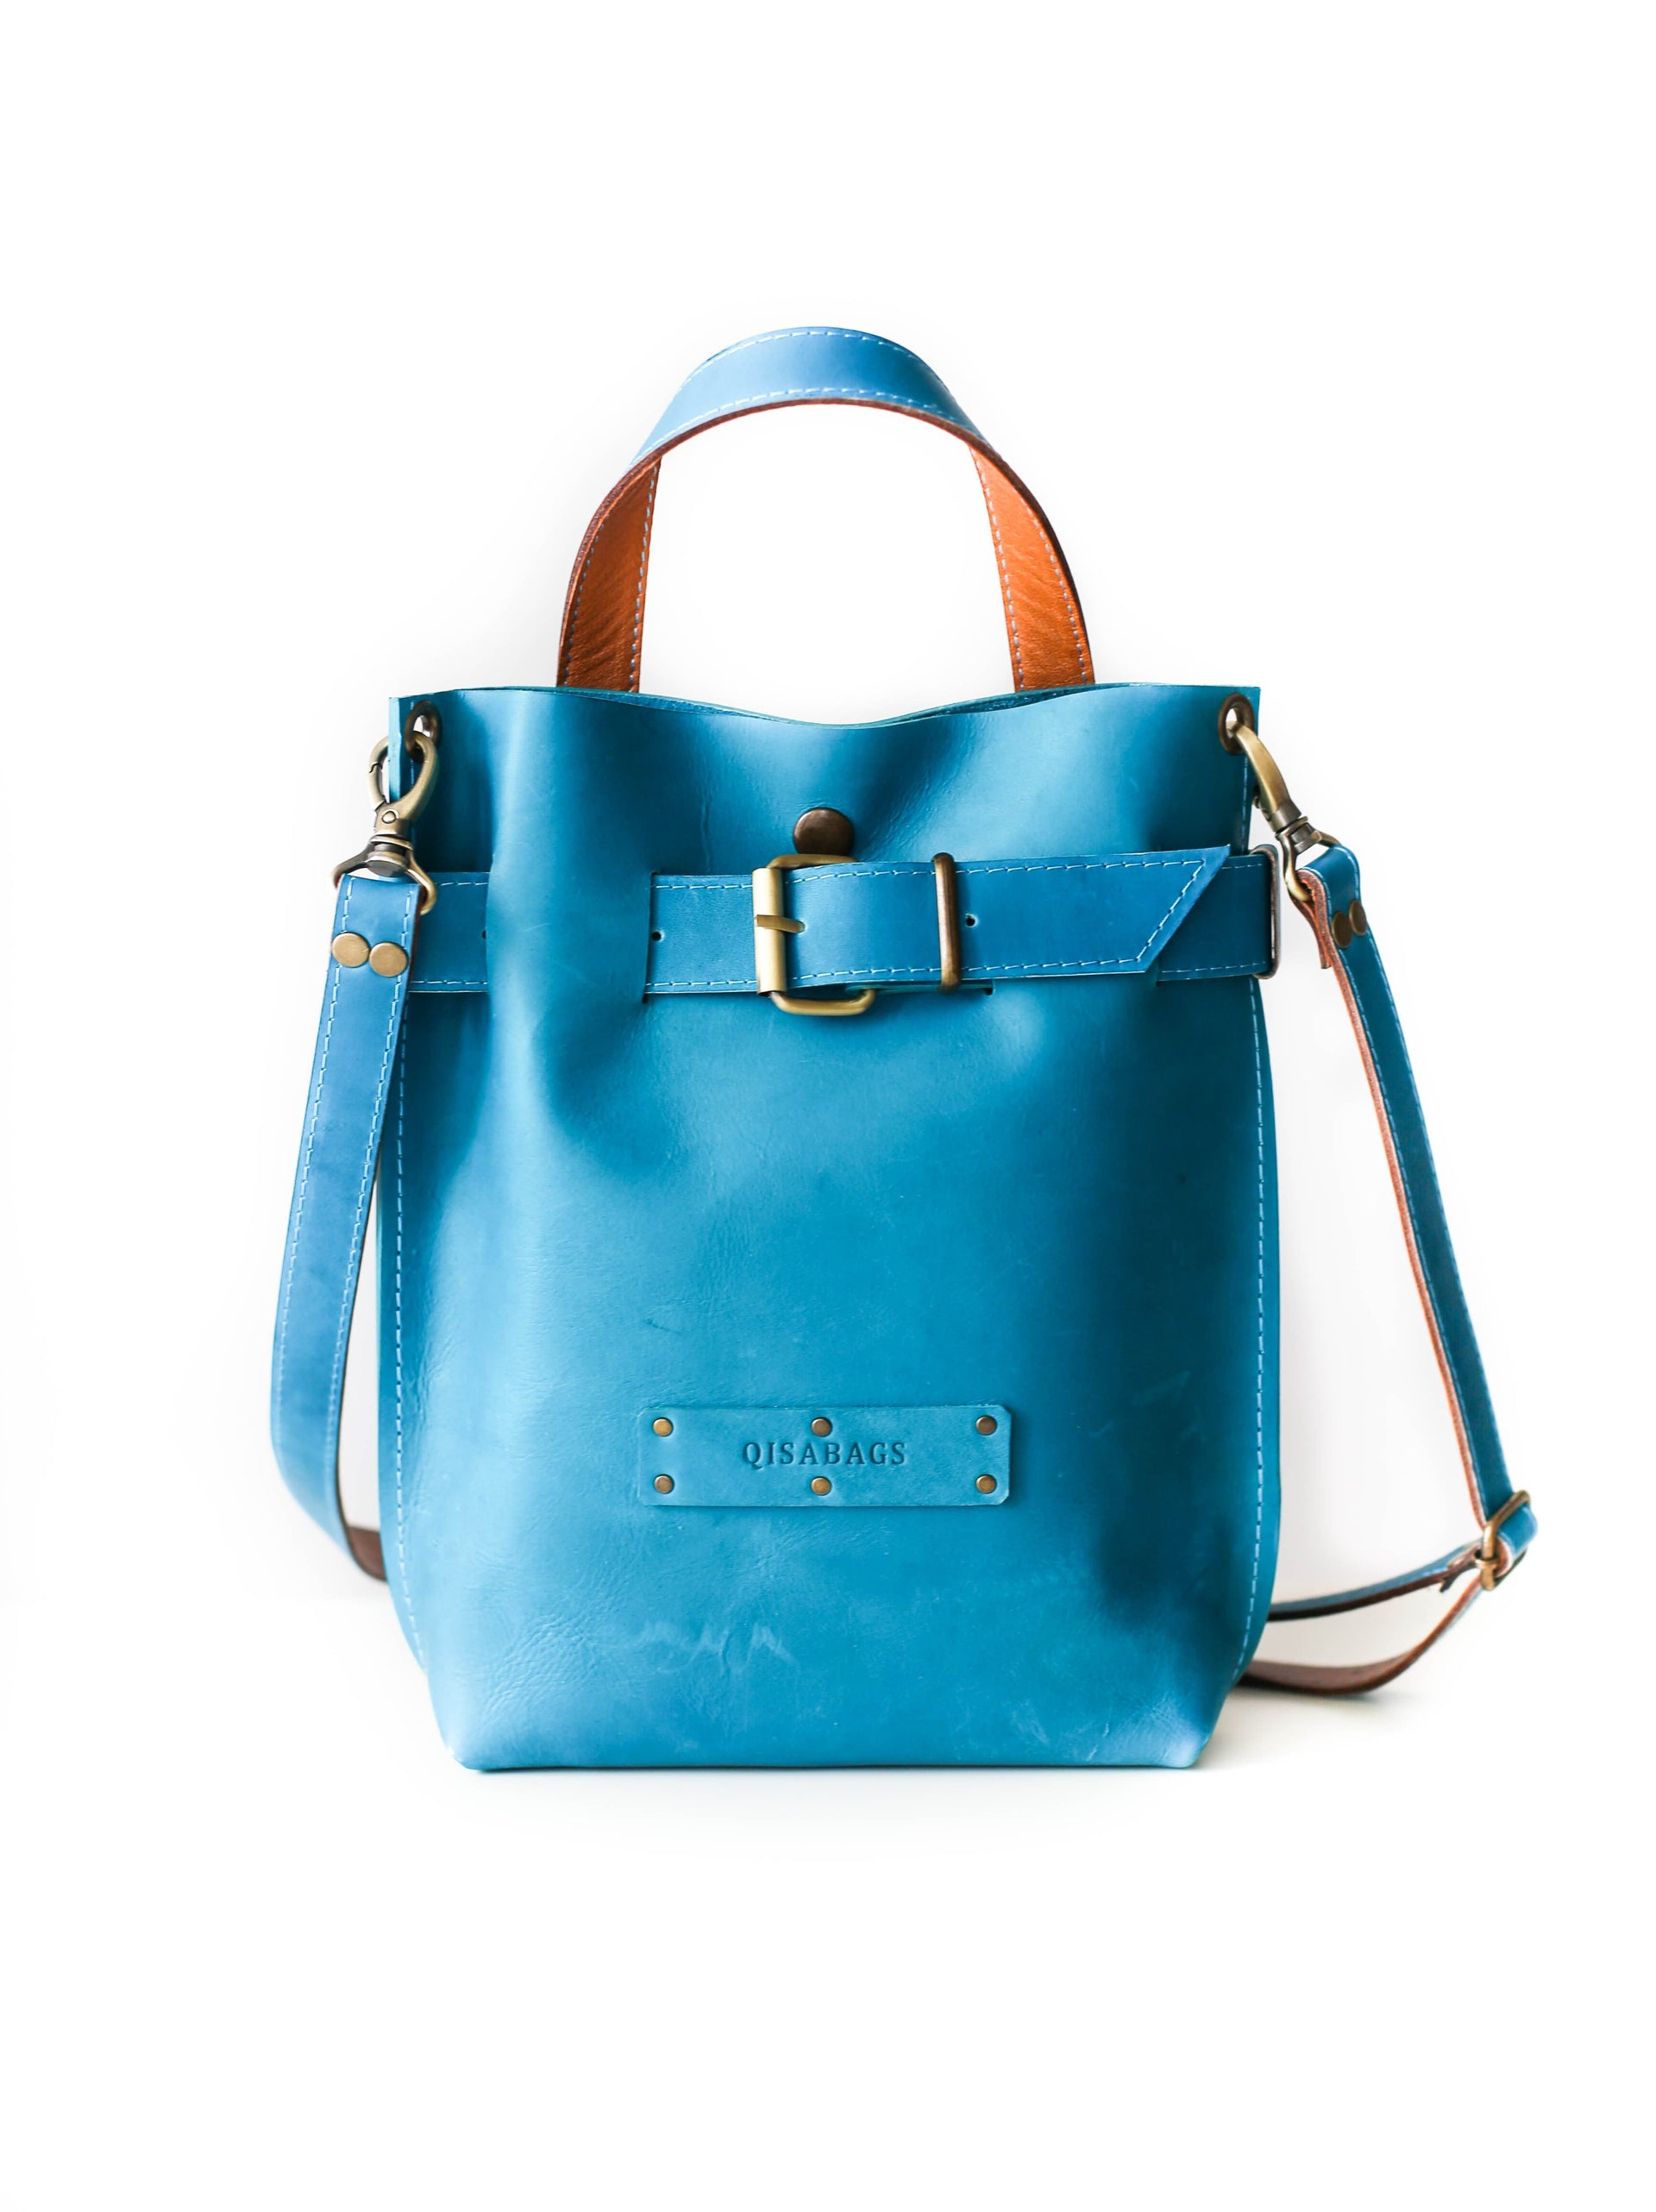 Blue leather designer bag